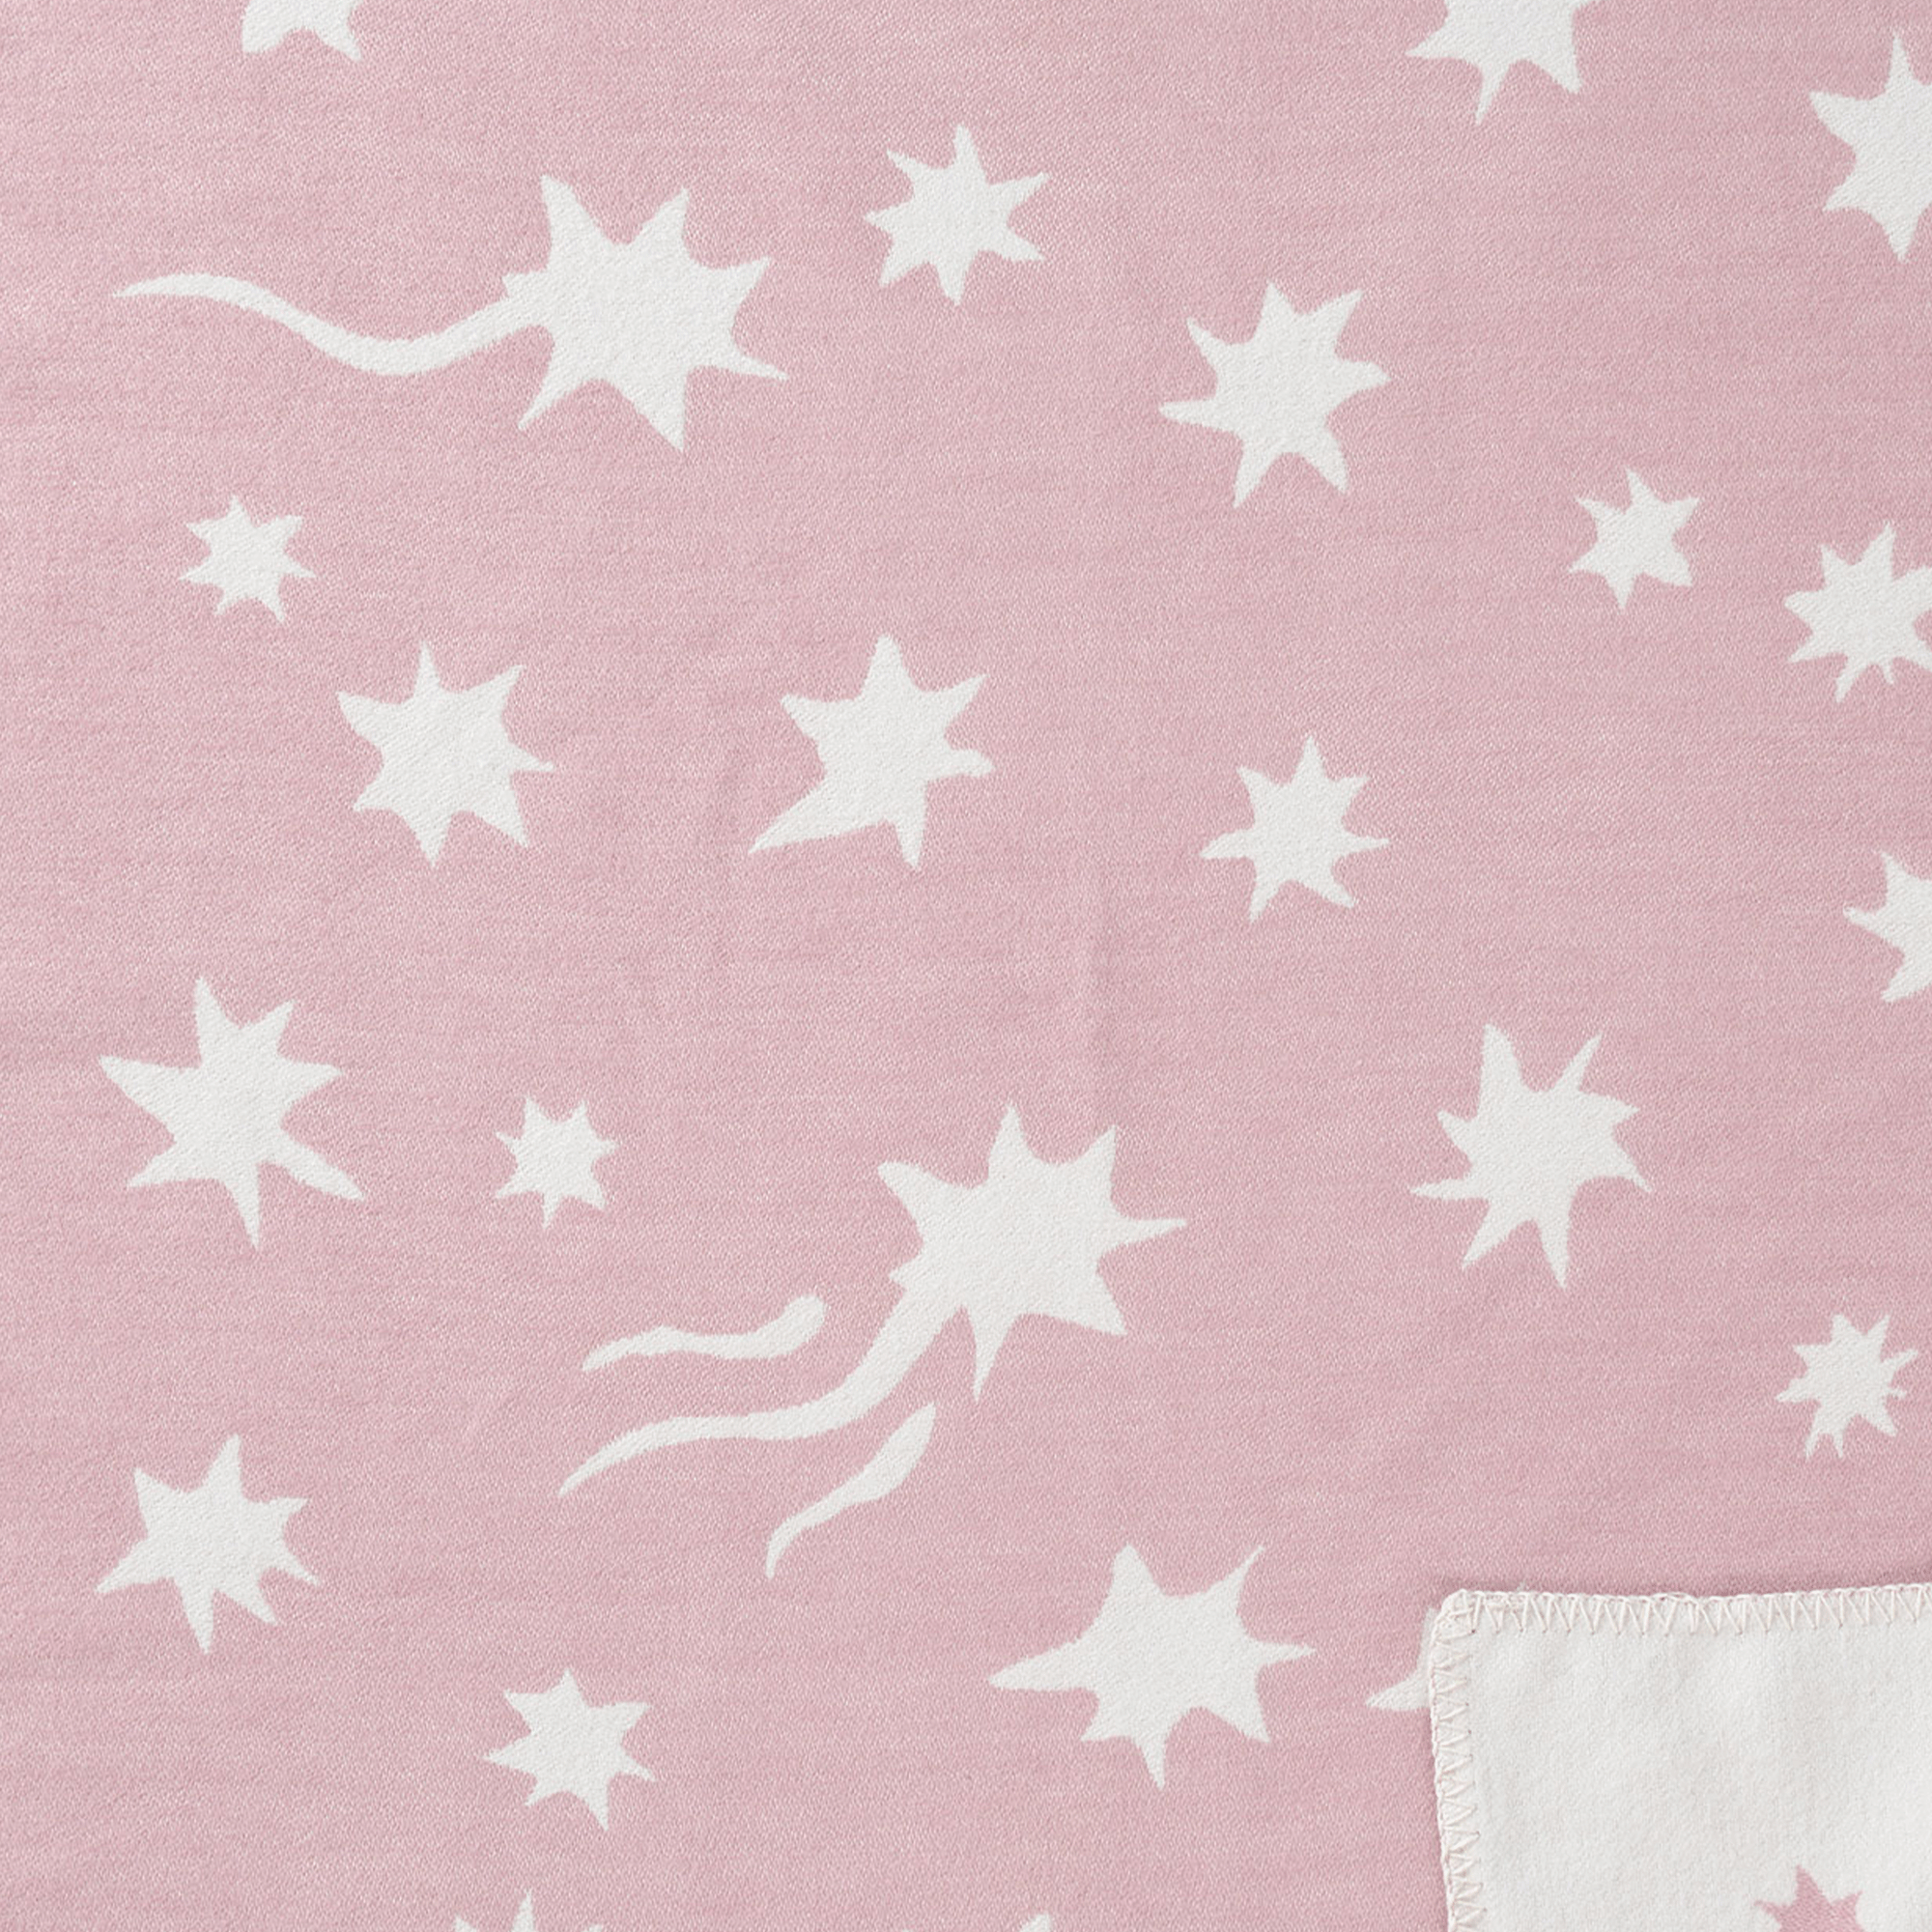 Shooting Star Pink 70x90cm Organic Brushed Cotton Blanket